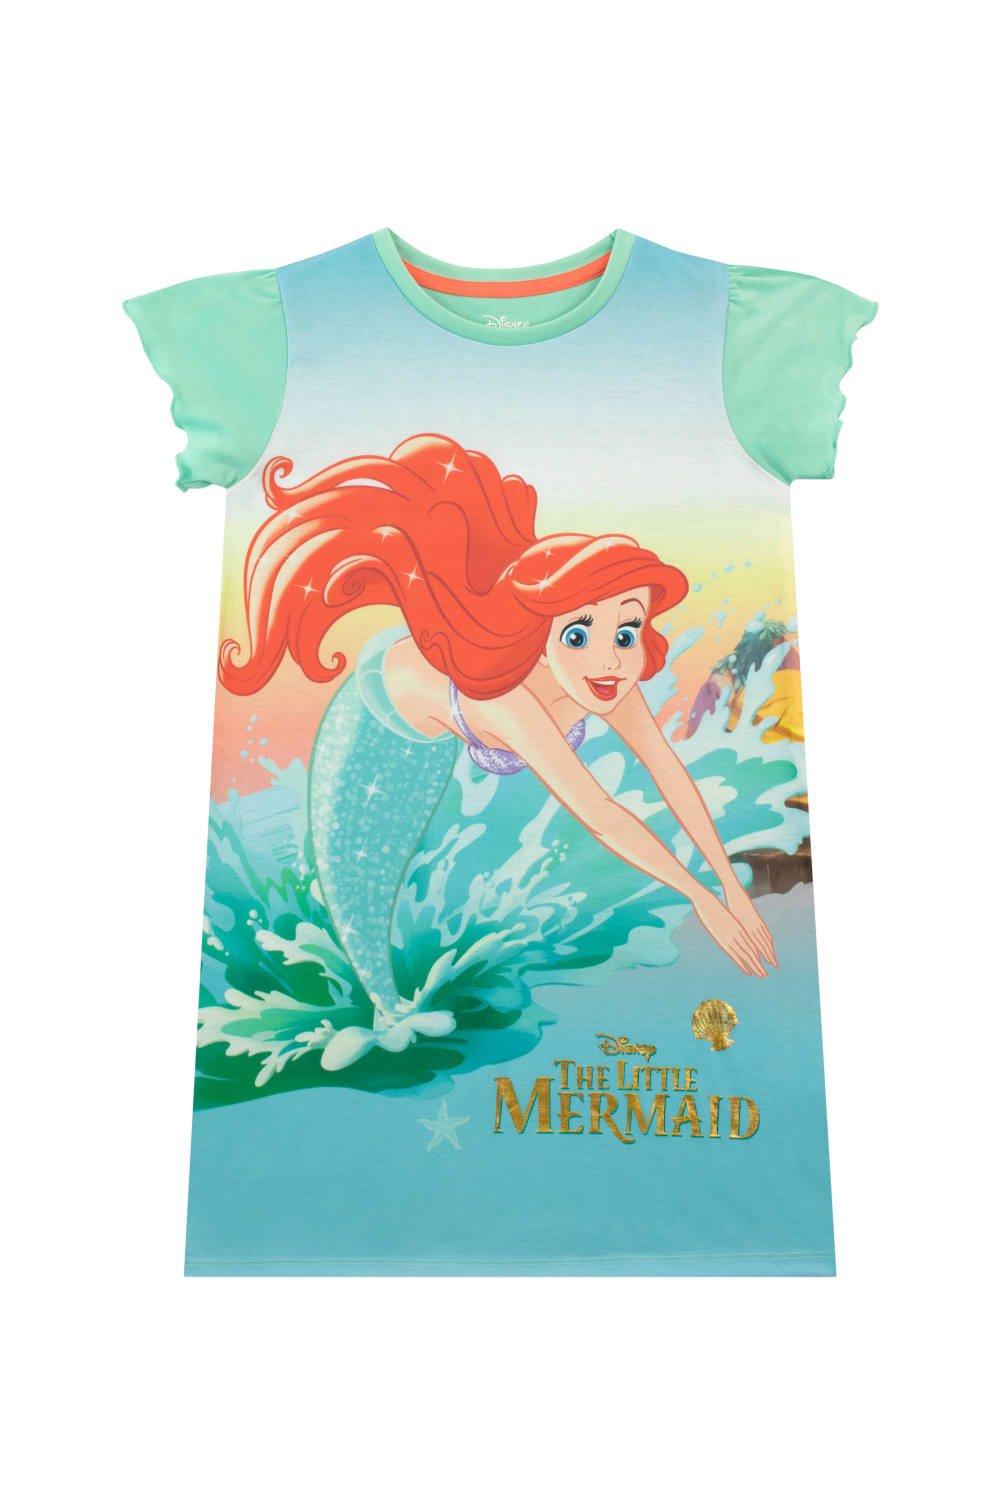 The Little Mermaid Ariel Nightdress